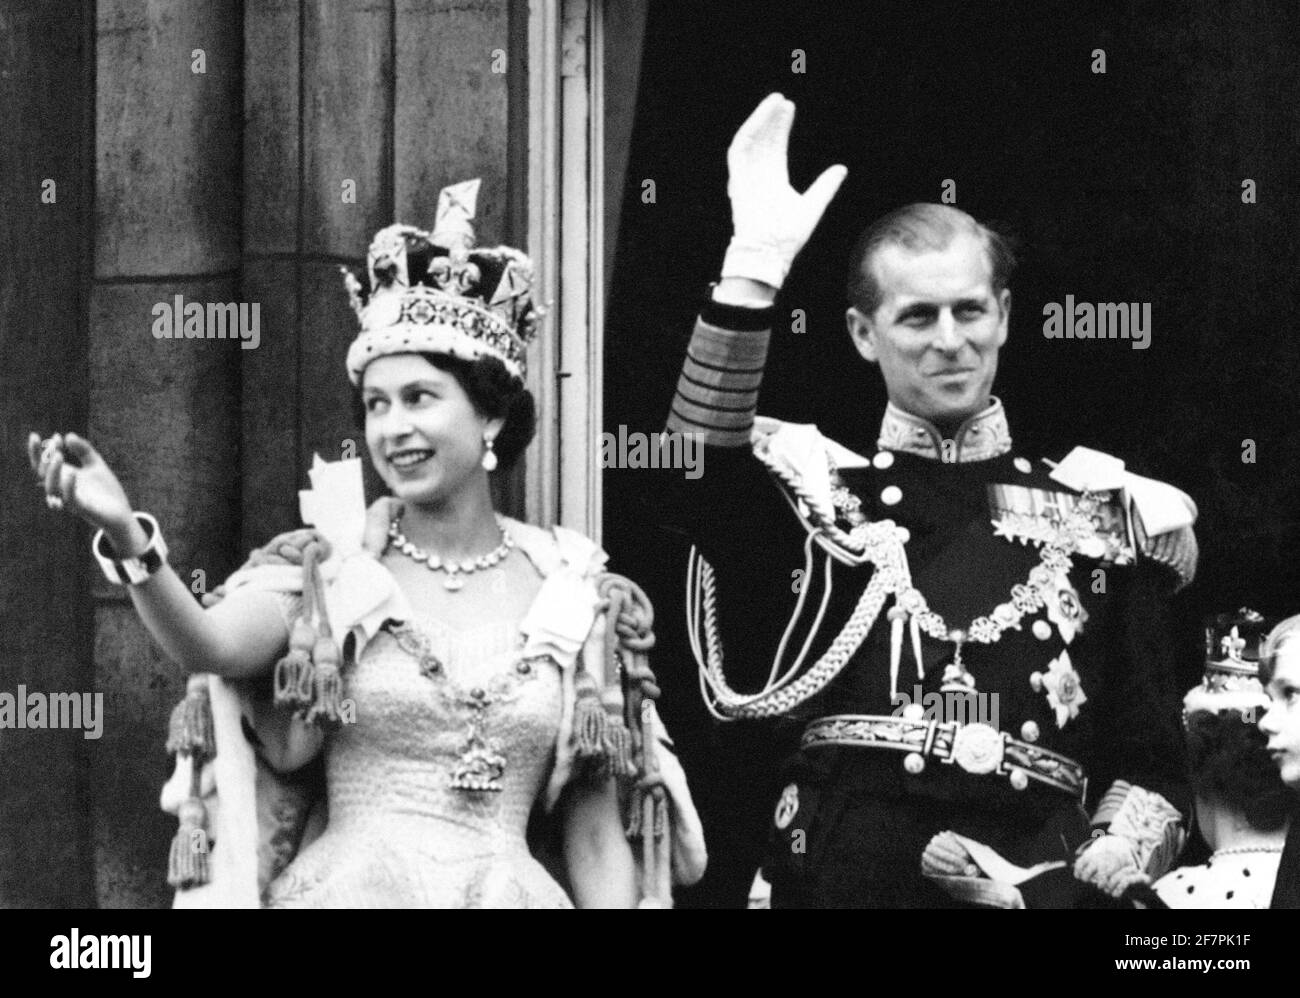 Datei-Foto vom 2/6/1953 von tQueen Elizabeth II trägt die Imperial State Crown und der Herzog von Edinburgh in Uniform von Admiral der Flotte Welle vom Balkon zu den schauenden Massen um die Tore des Buckingham Palace nach der Krönung. Ausgabedatum: Freitag, 9. April 2021. Stockfoto